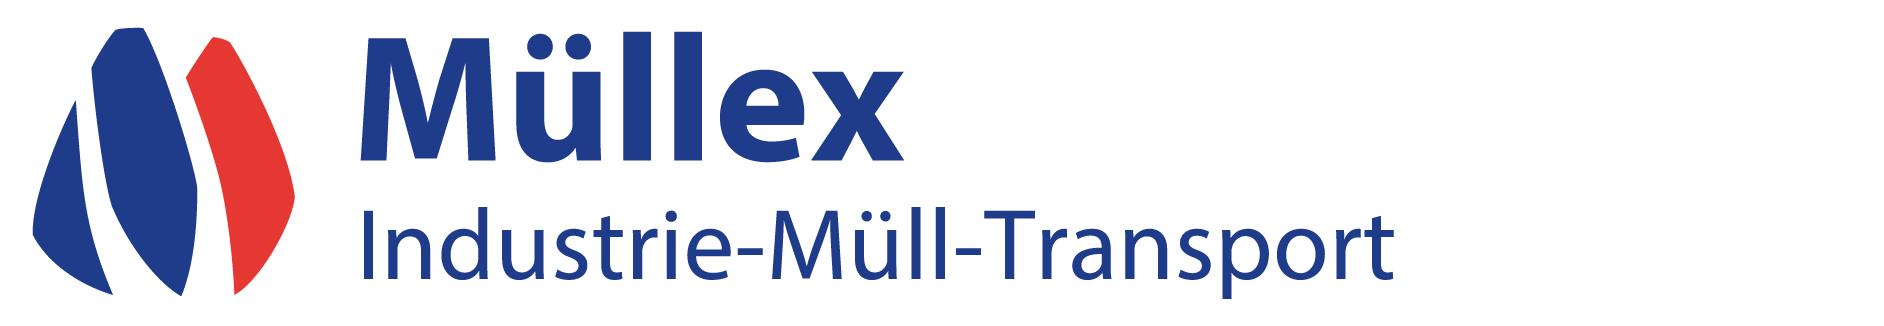 muellex_logo